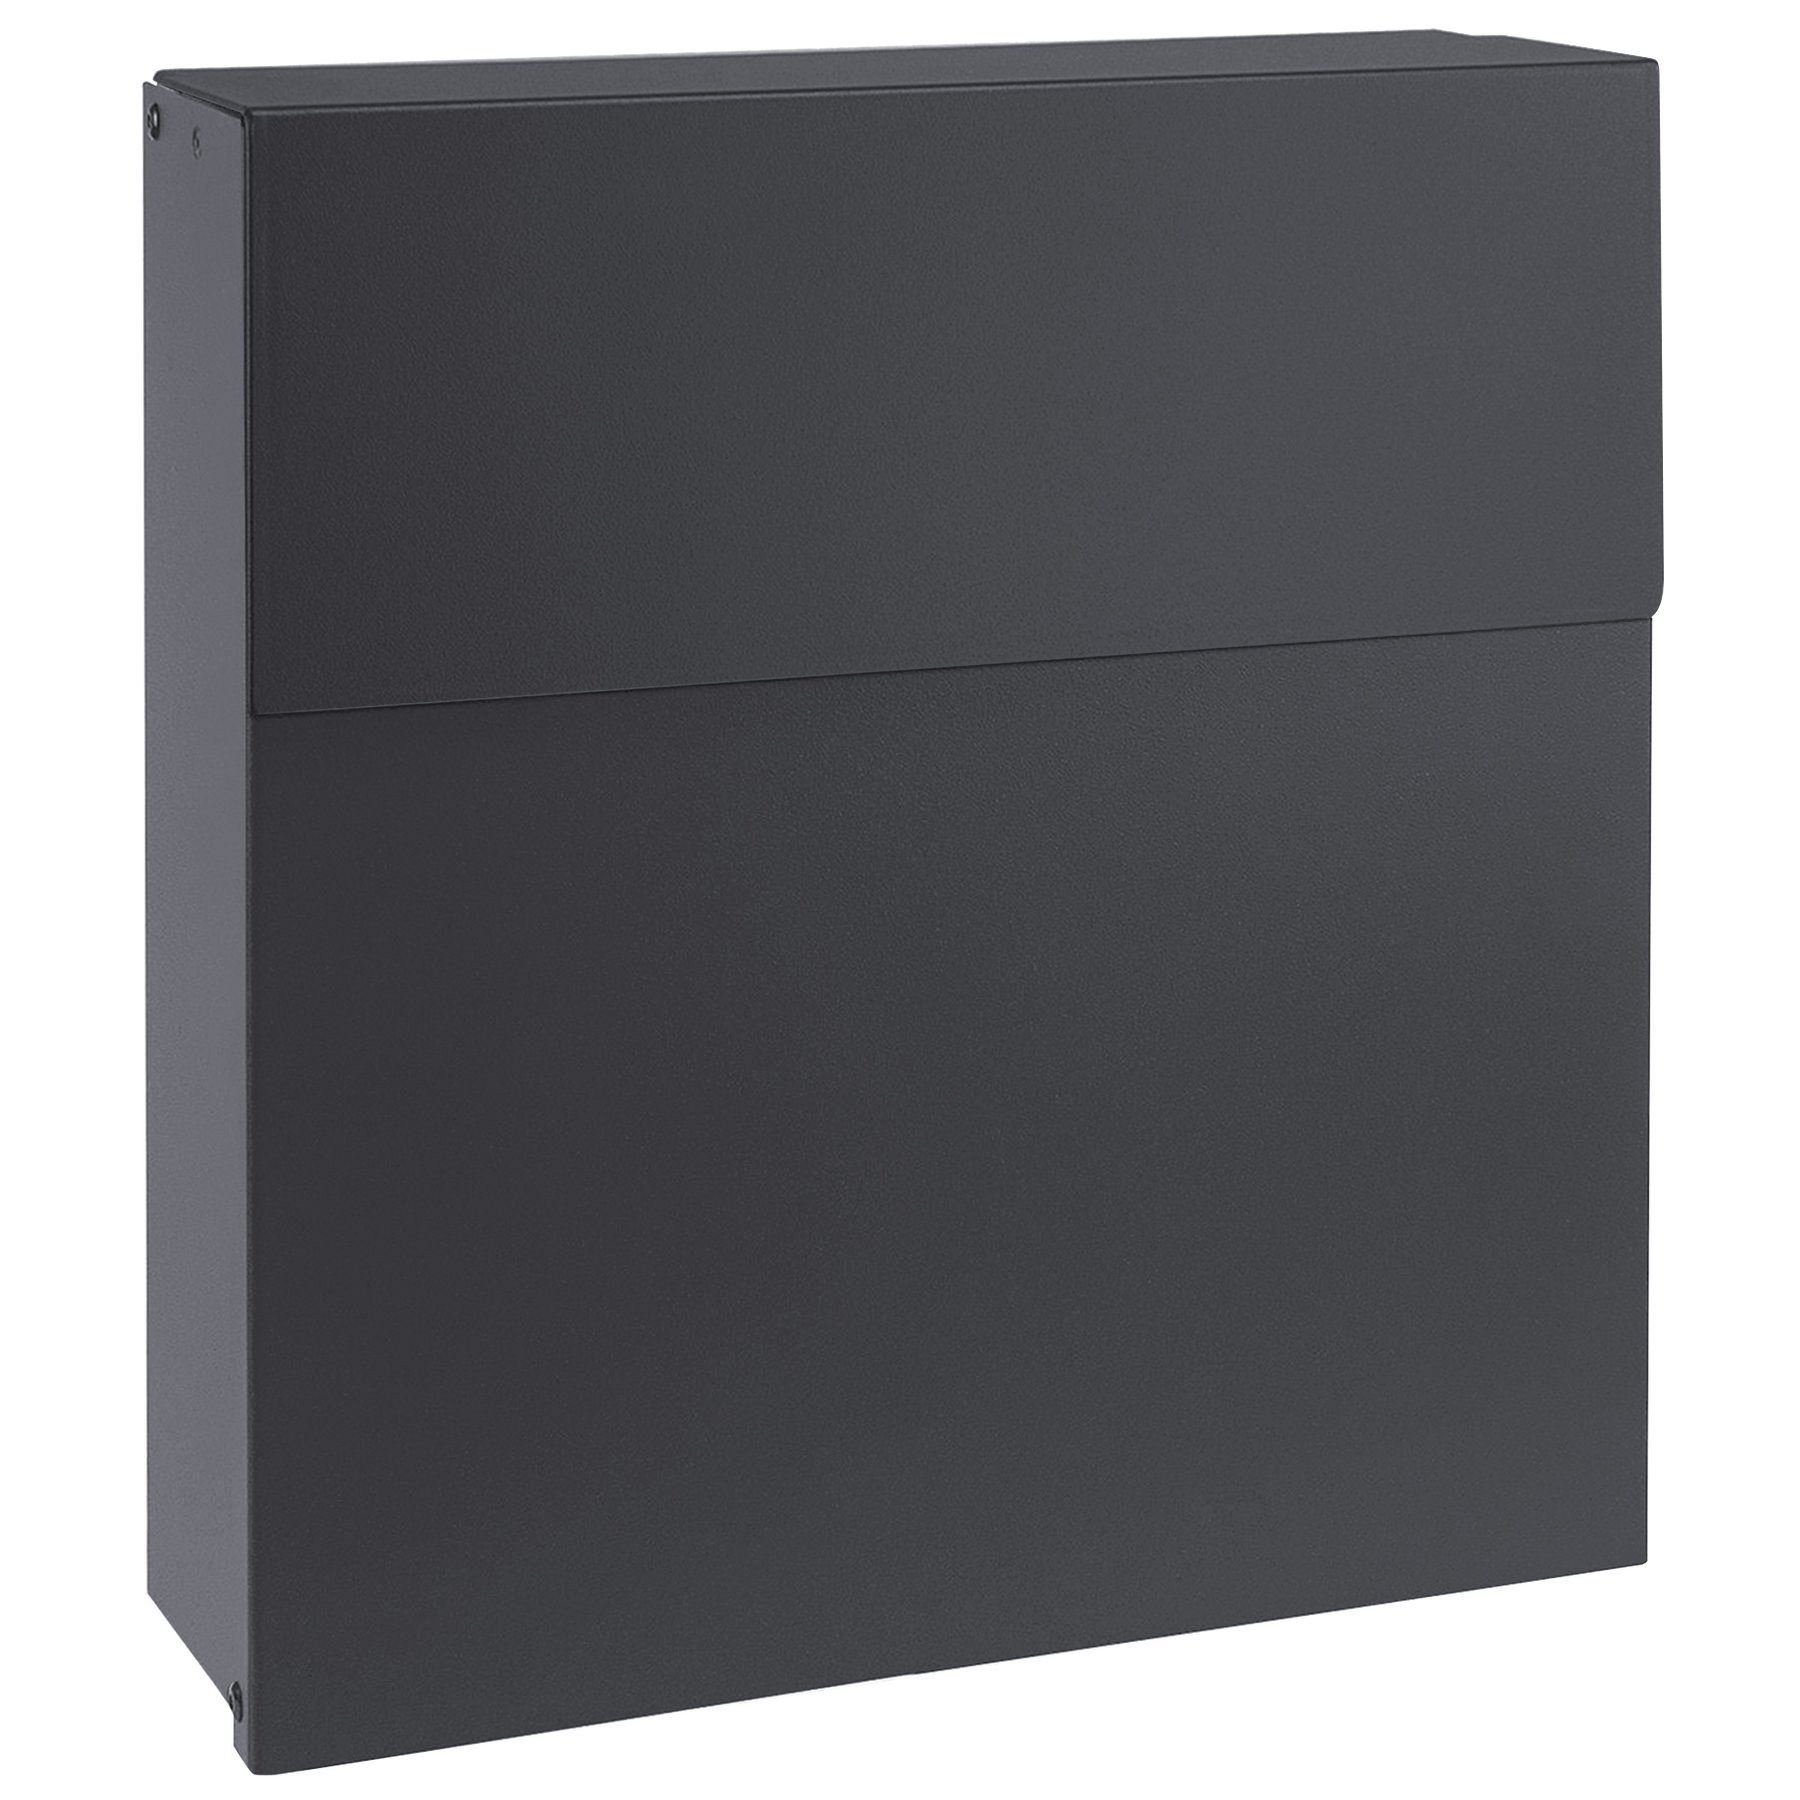 MOCAVI Briefkasten MOCAVI Box 570 Design-Briefkasten anthrazit (RAL 7016)